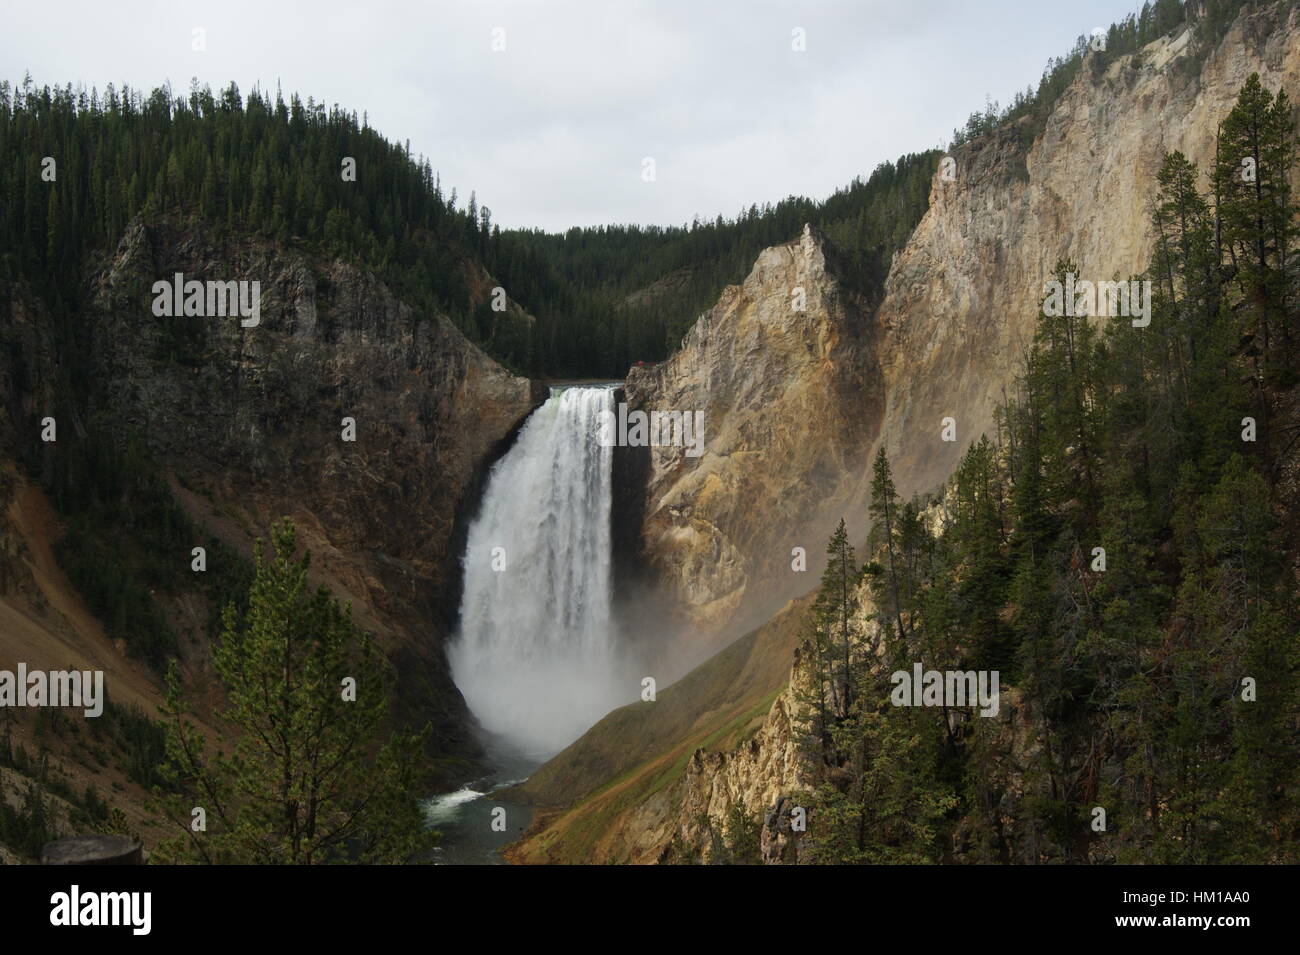 Caída de agua de Yellowstone. Foto de stock